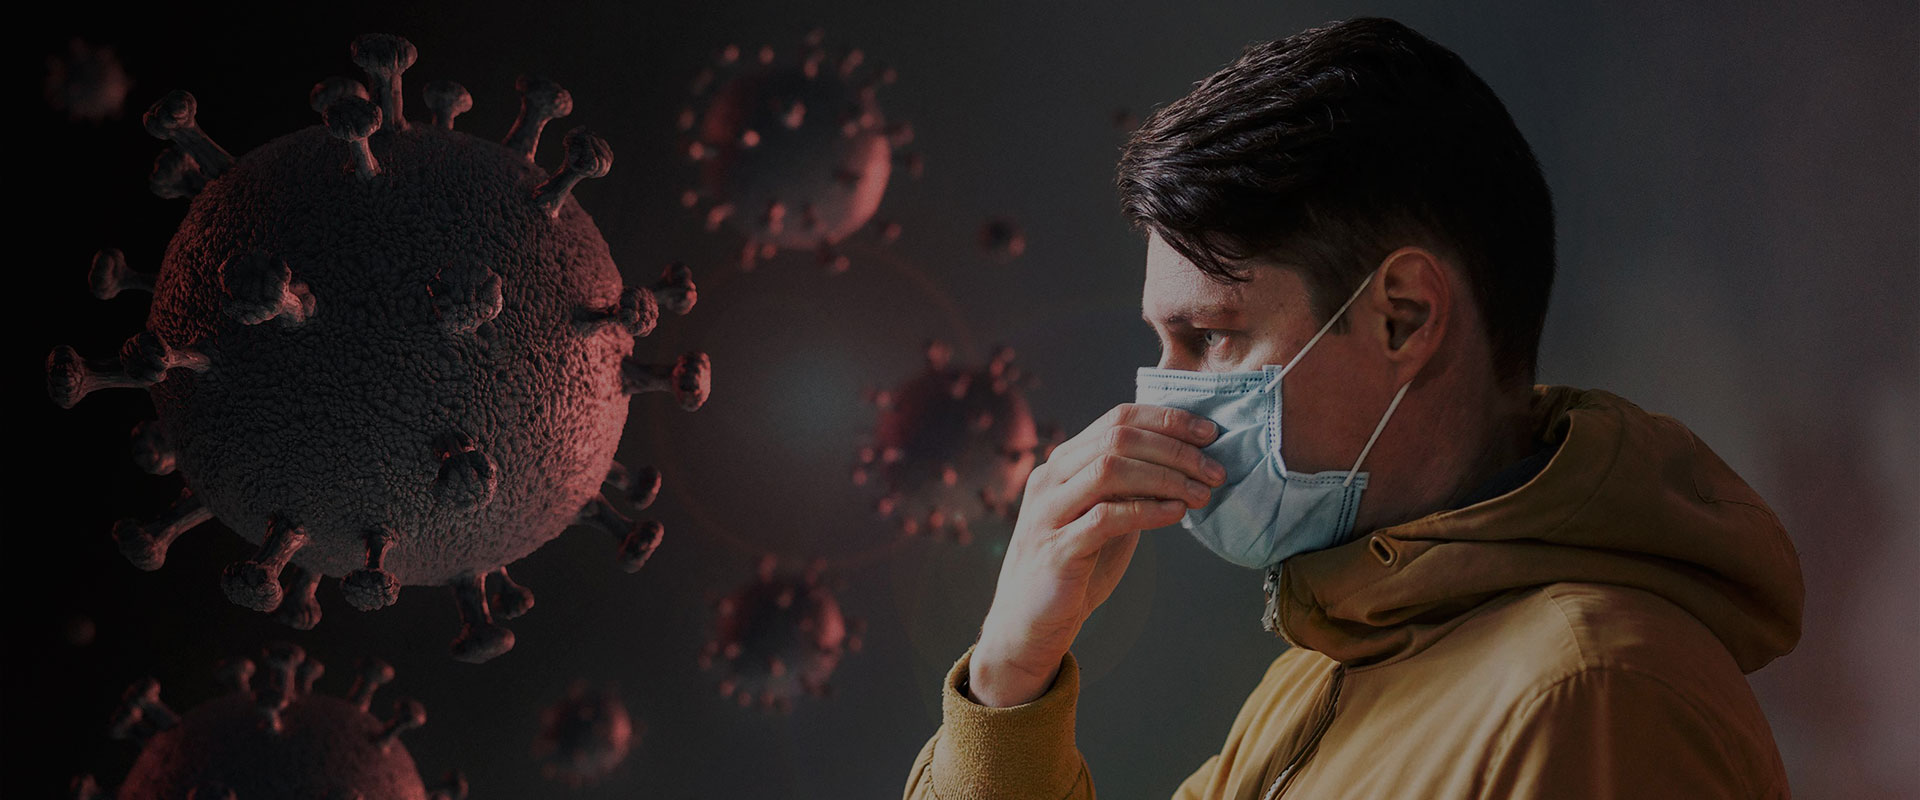 COVID – 19 outbreak – wearing masks